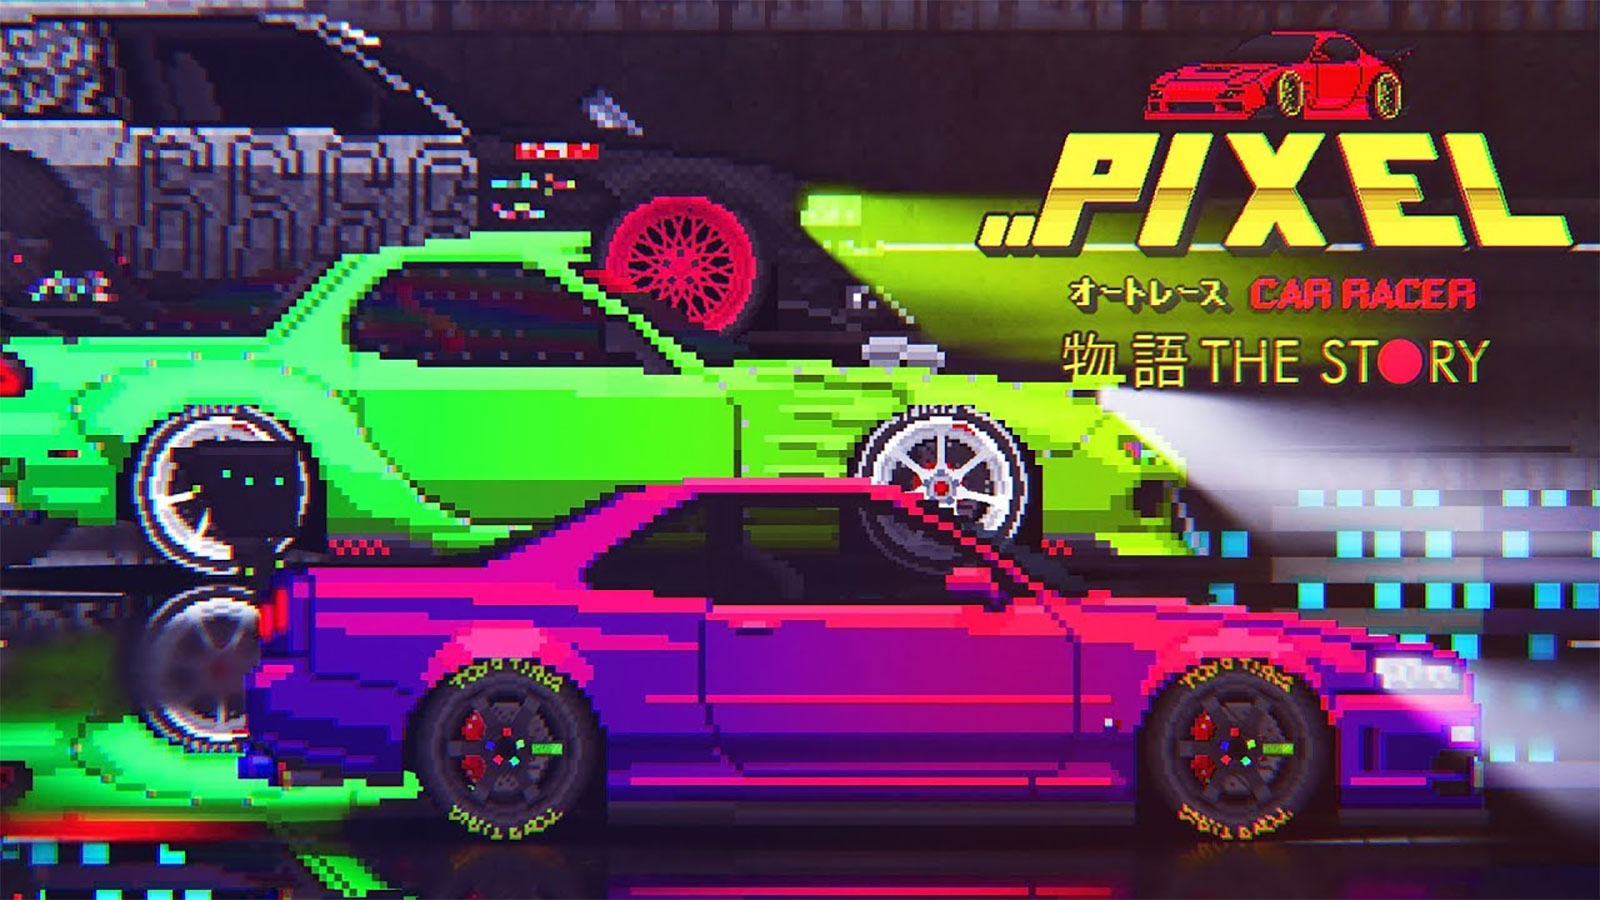 pixel car racer story mode mod apk